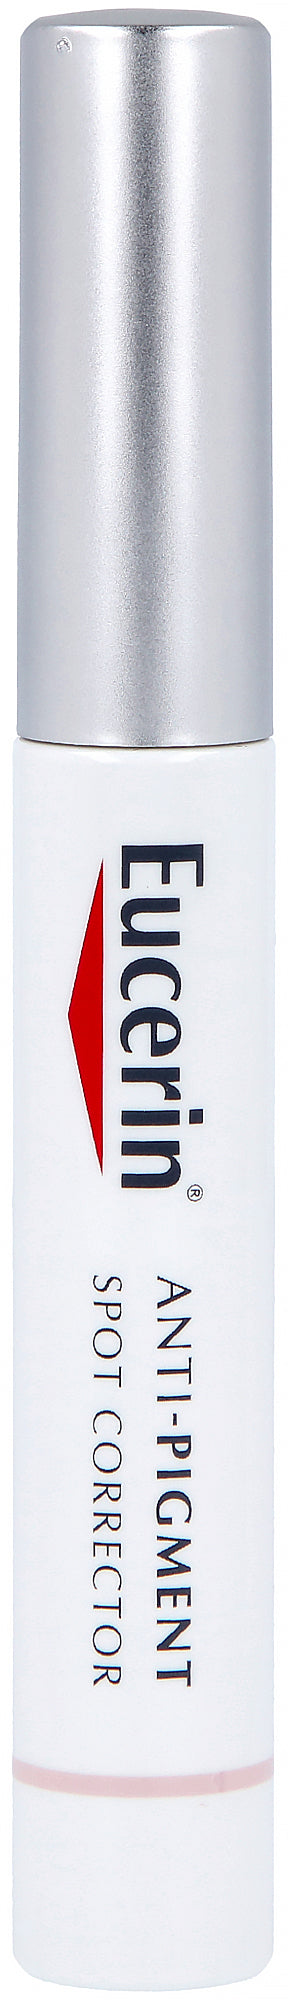 Eucerin Anti-Pigment Spot Corrector 5 ml